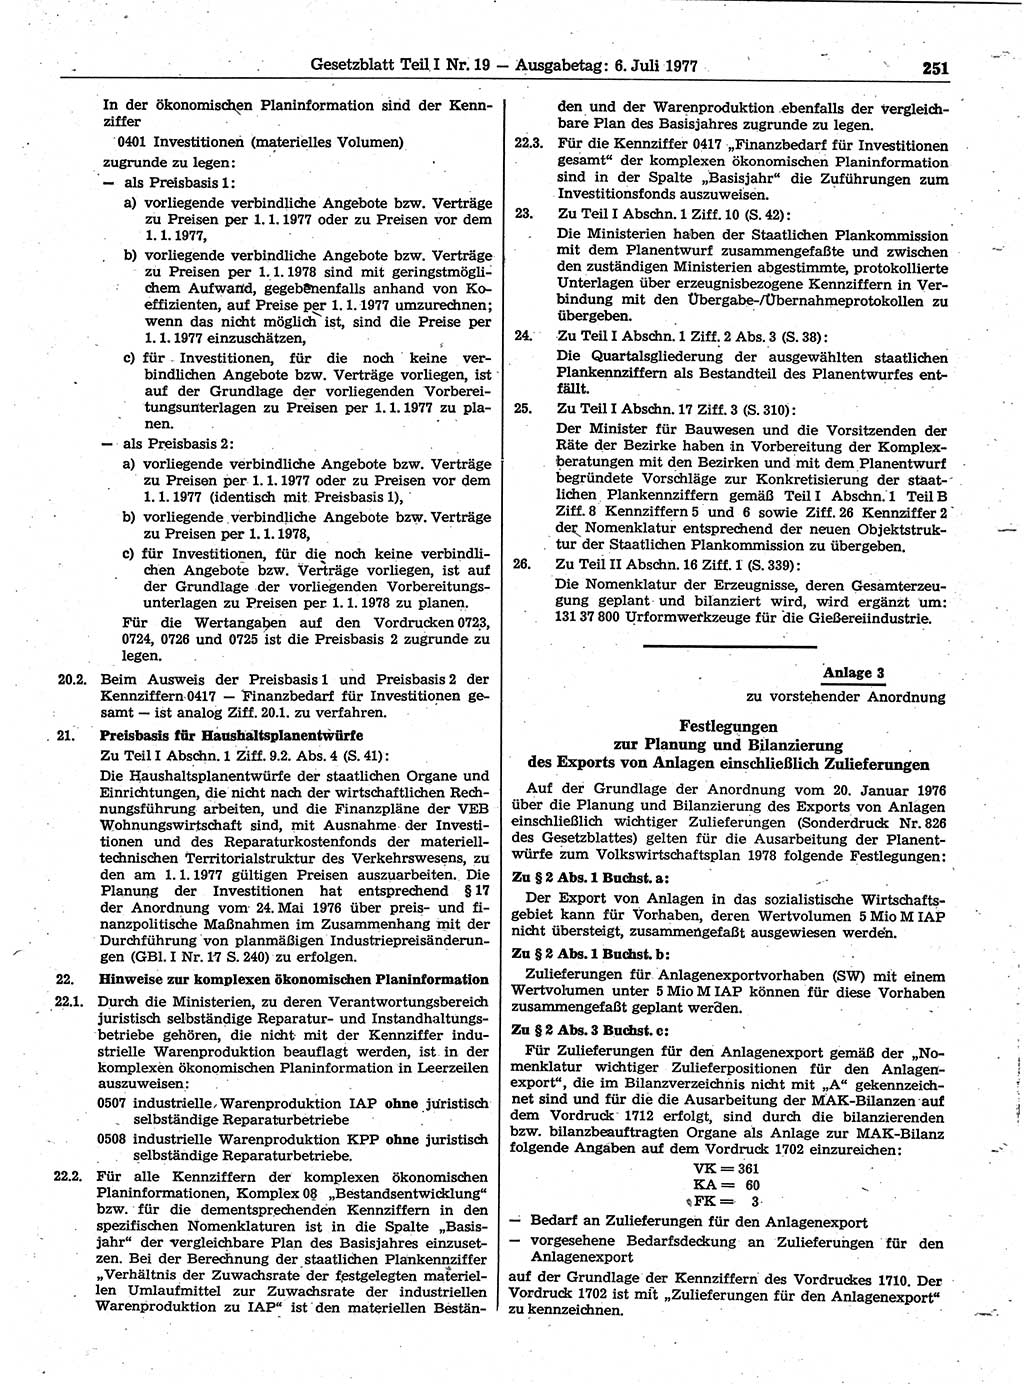 Gesetzblatt (GBl.) der Deutschen Demokratischen Republik (DDR) Teil Ⅰ 1977, Seite 251 (GBl. DDR Ⅰ 1977, S. 251)